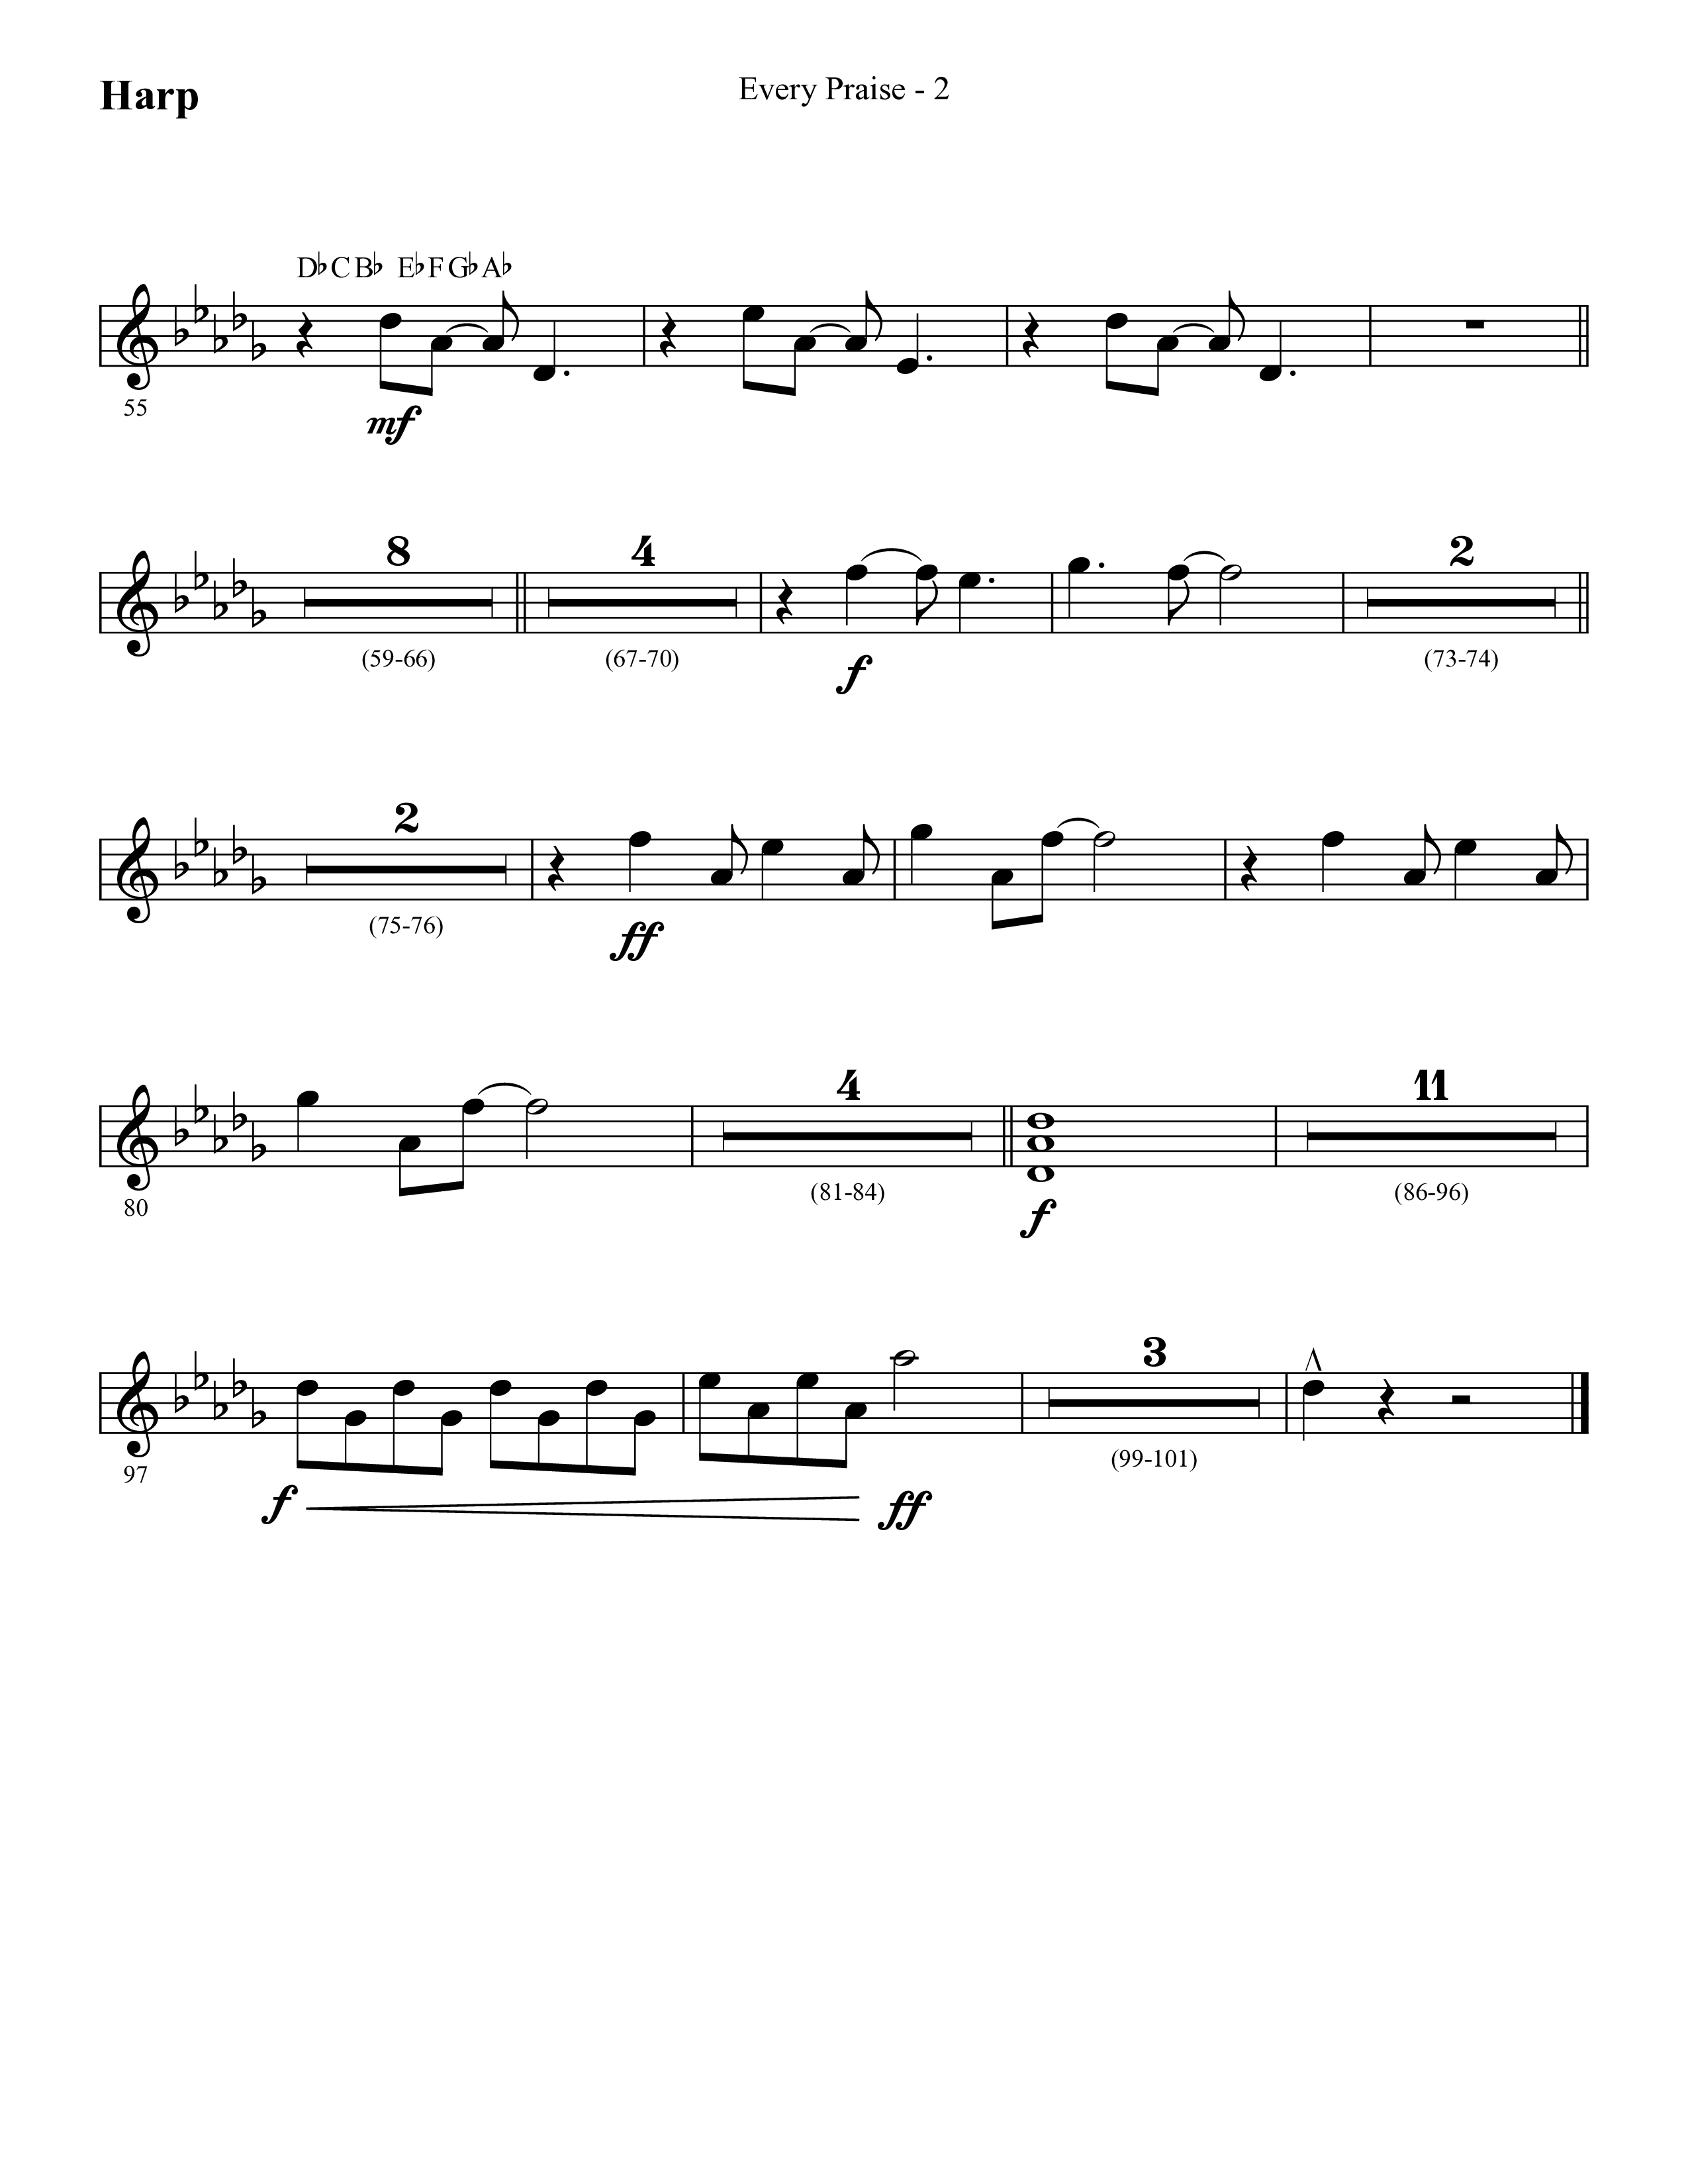 Every Praise (Choral Anthem SATB) Harp (Lifeway Choral / Arr. Cliff Duren)